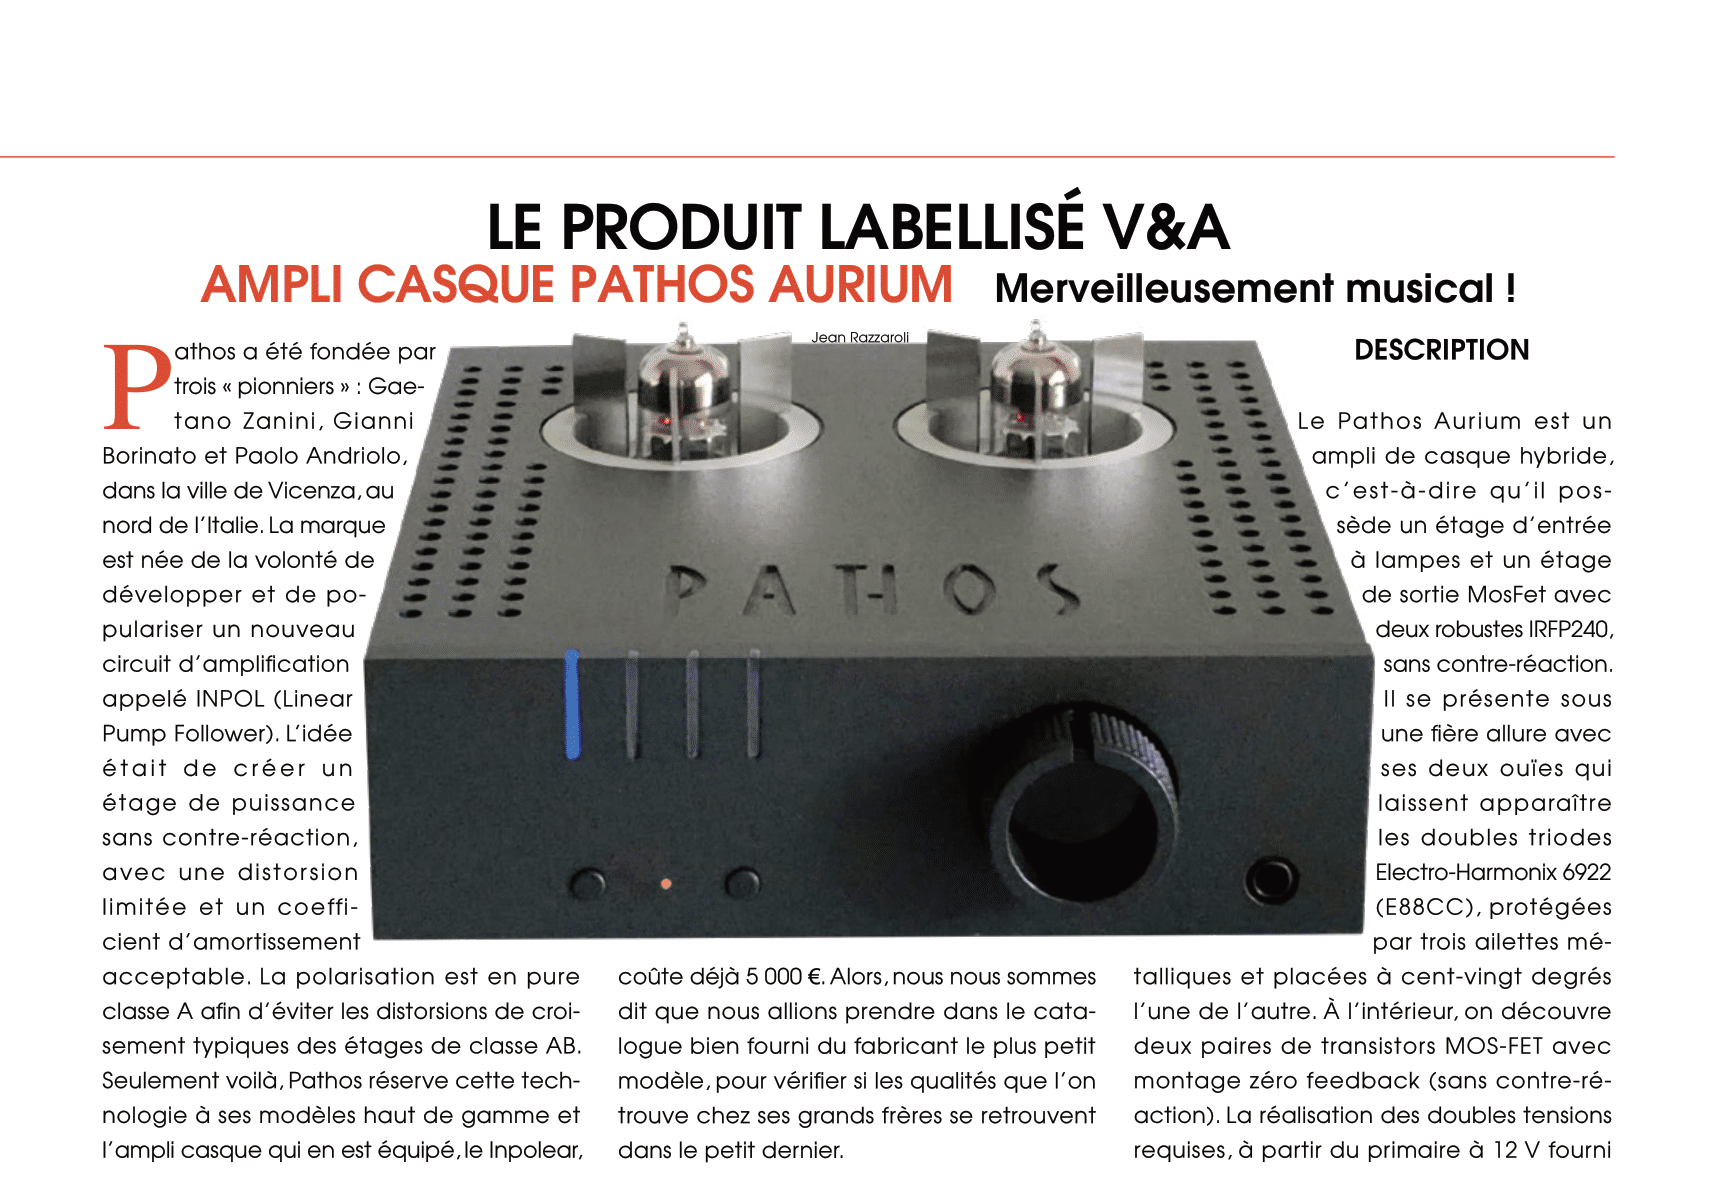 Le produit labellisé V&A : l'ampli casque Pathos Aurium